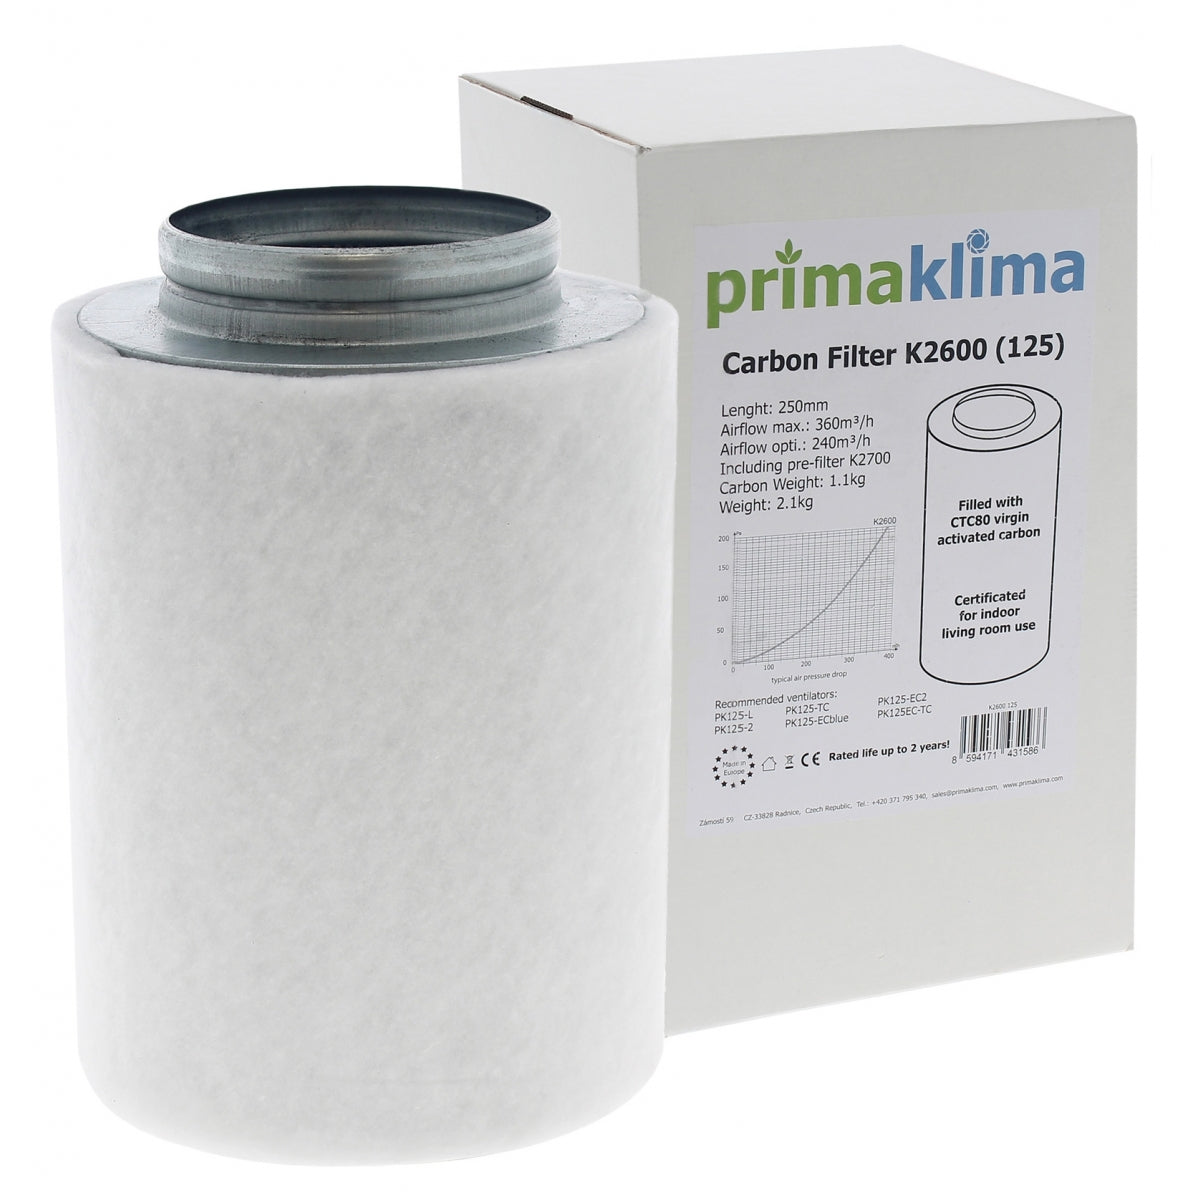 Le filtre à charbon anti odeur Prima Klima Ecoline de 125mm de diamètre